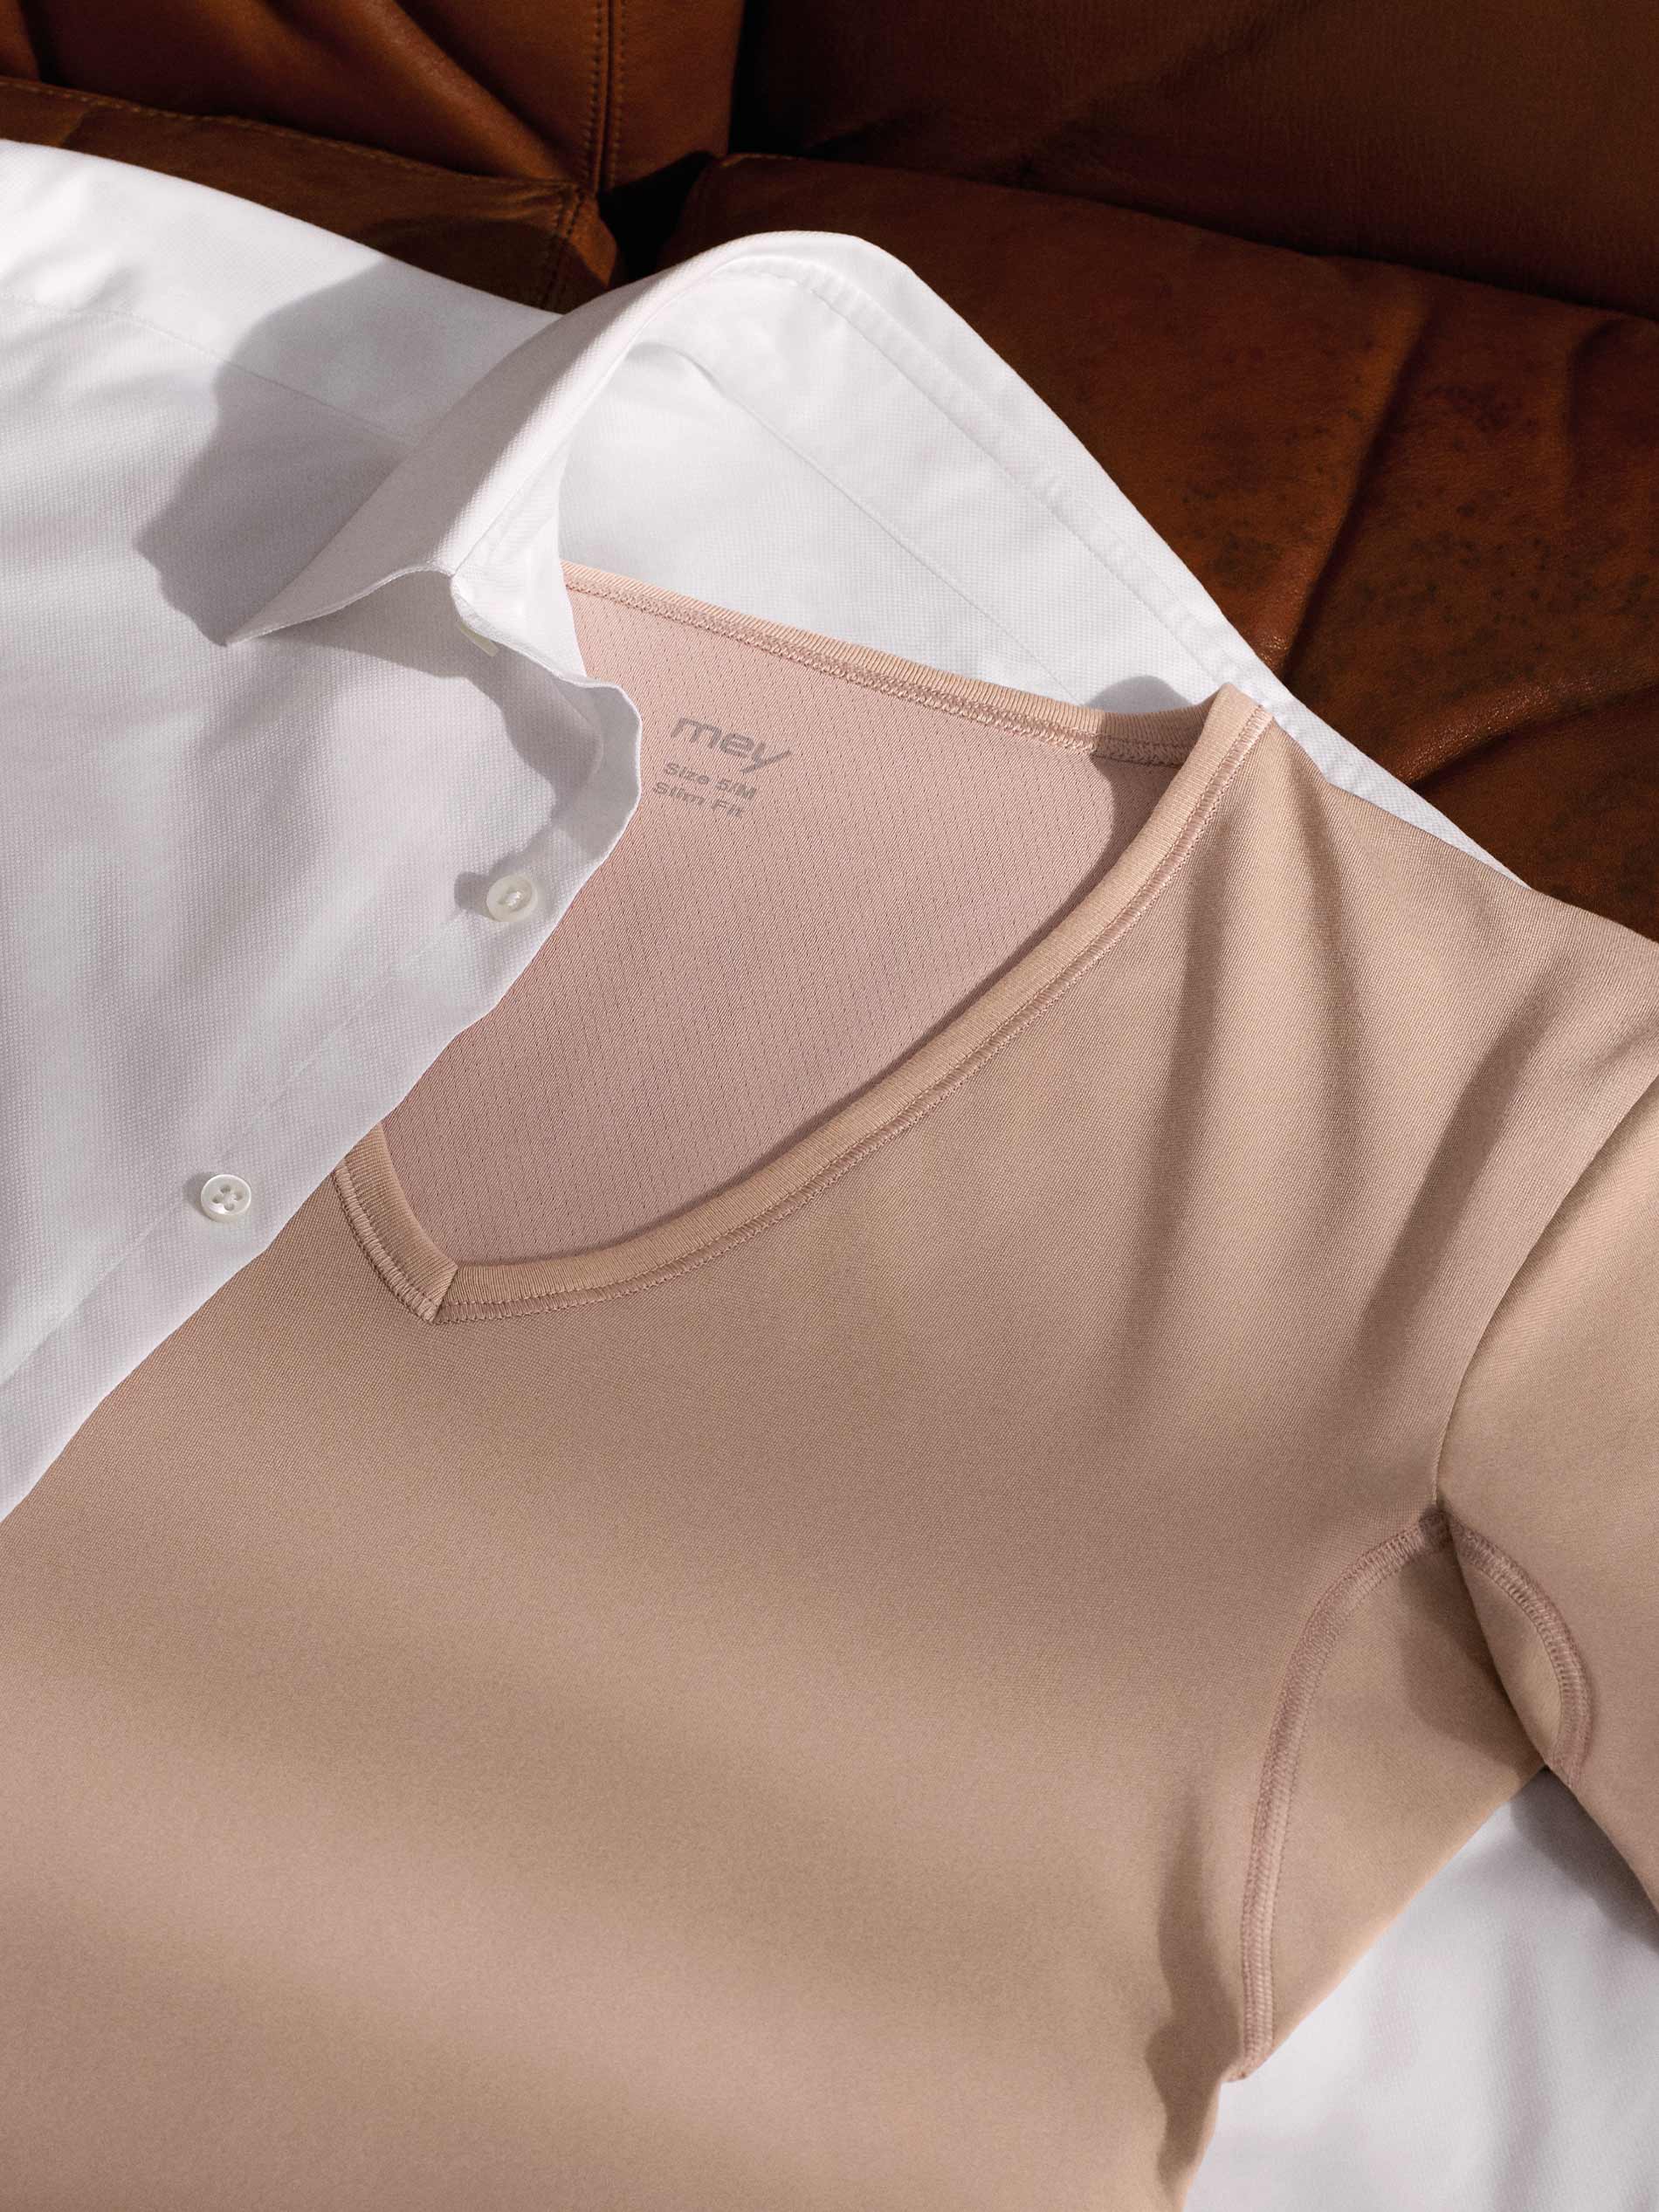 Stoffen inzetstuk met COOLMAX®-vezels aan de nek van het onderhemd in de kleur Light Skin wordt door een wit hemd bedekt | mey®